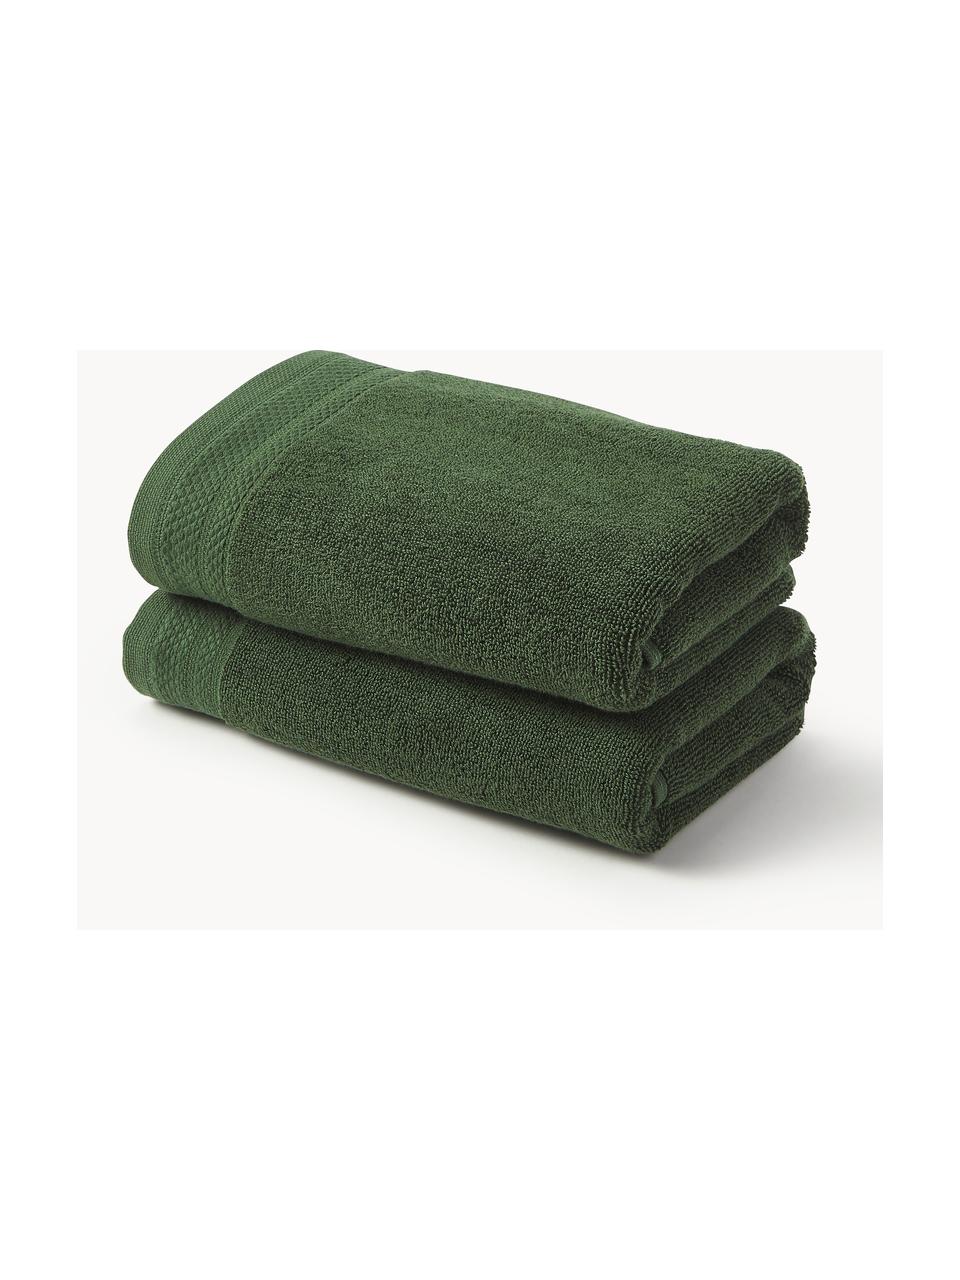 Ręcznik z bawełny organicznej Premium, różne rozmiary, Ciemny zielony, Ręcznik, S 50 x D 100 cm, 2 szt.